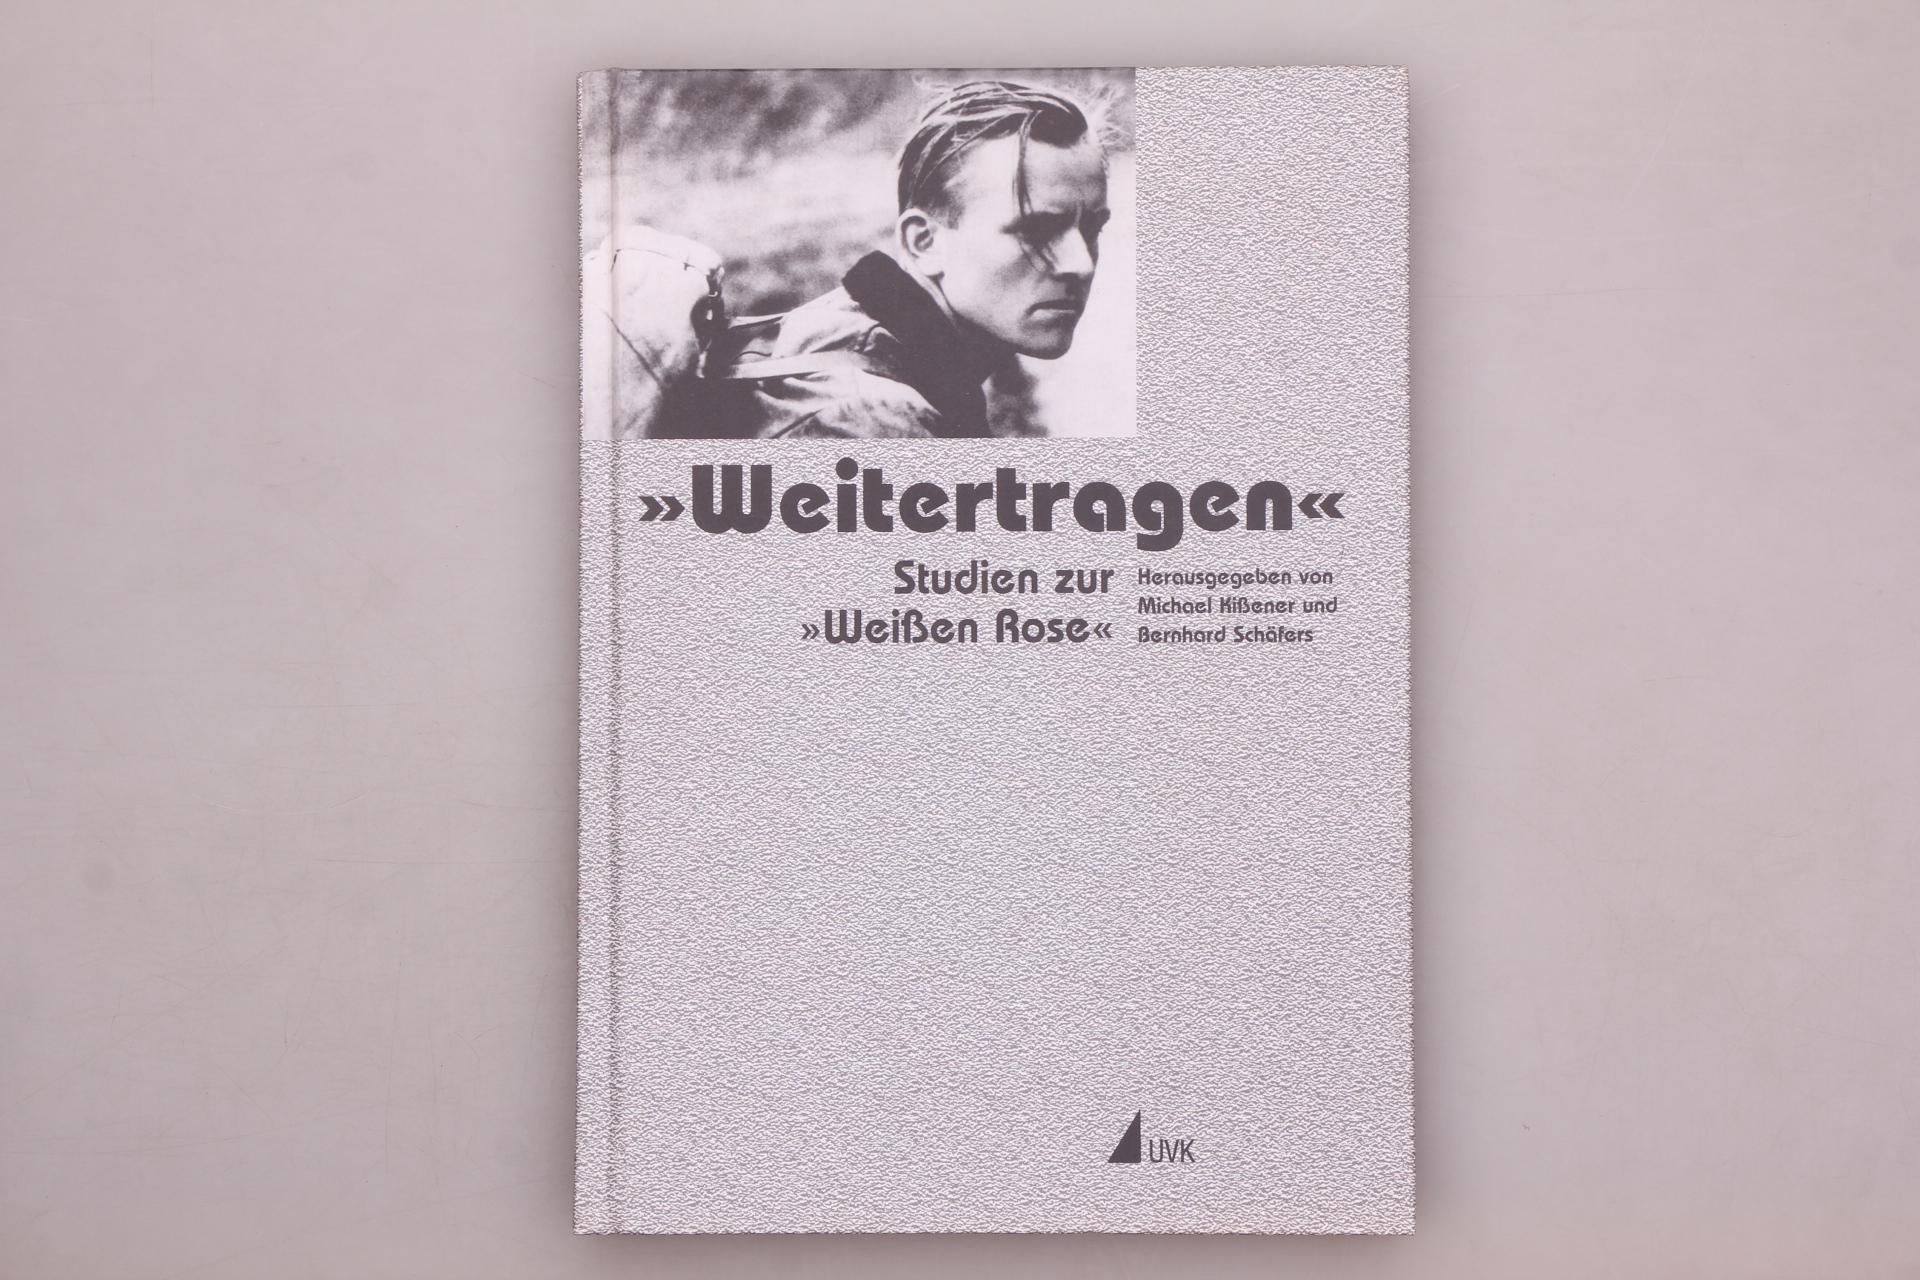 WEITERTRAGEN. Studien zur Weißen Rose Festschrift für Anneliese Knoop-Graf zum 80. Geburtstag - [Hrsg.]: Kißener, Michael; Schäfers, Bernhard